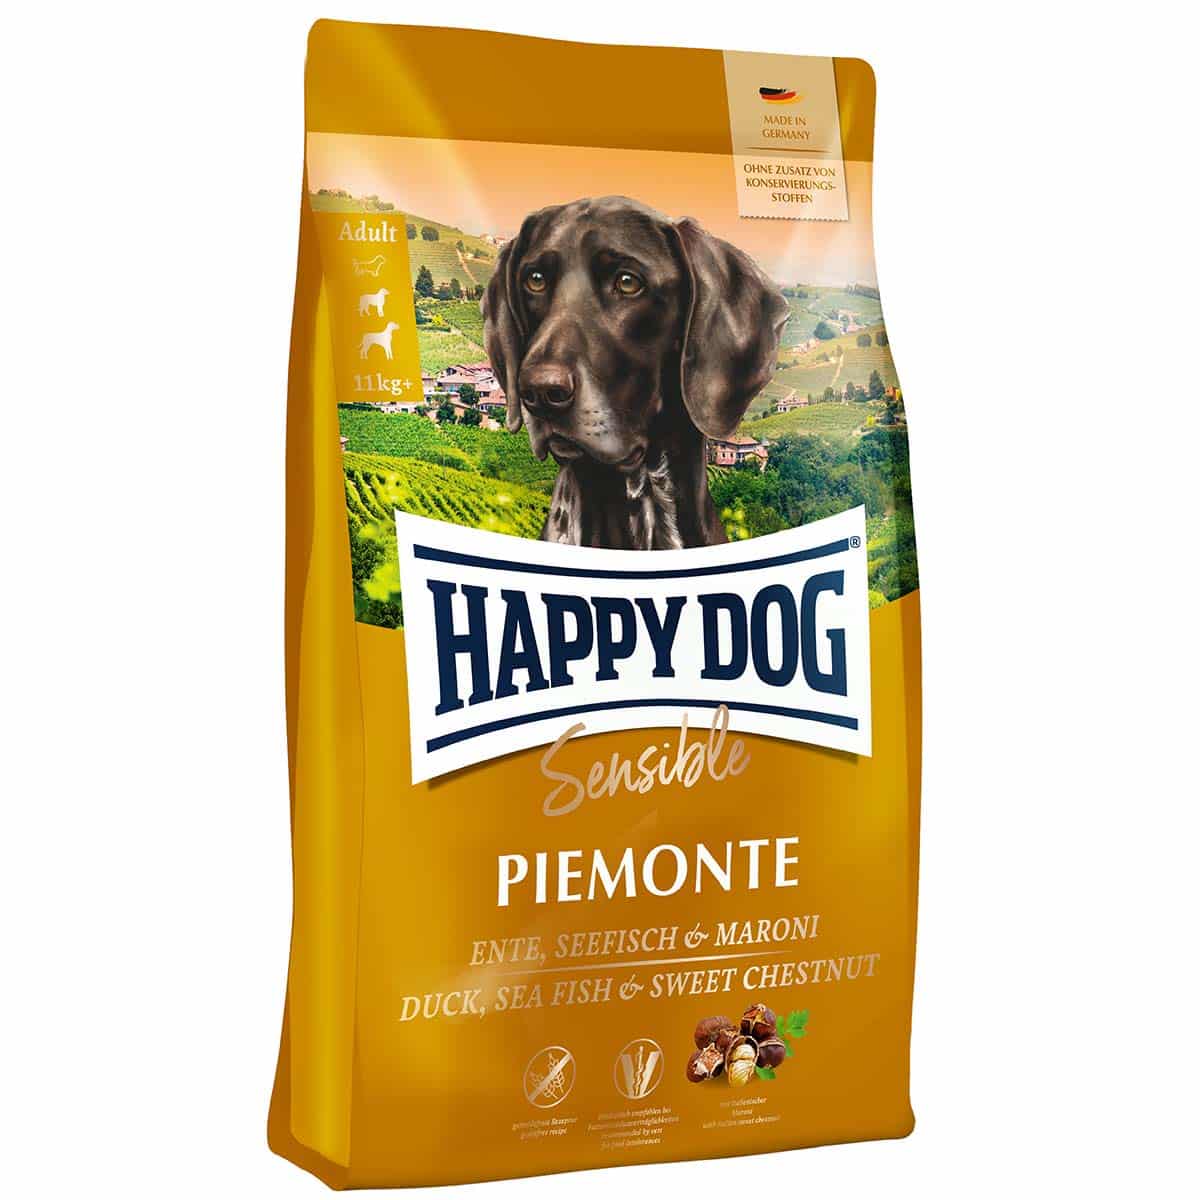 Happy Dog Supreme Sensible Piemonte 2x10kg